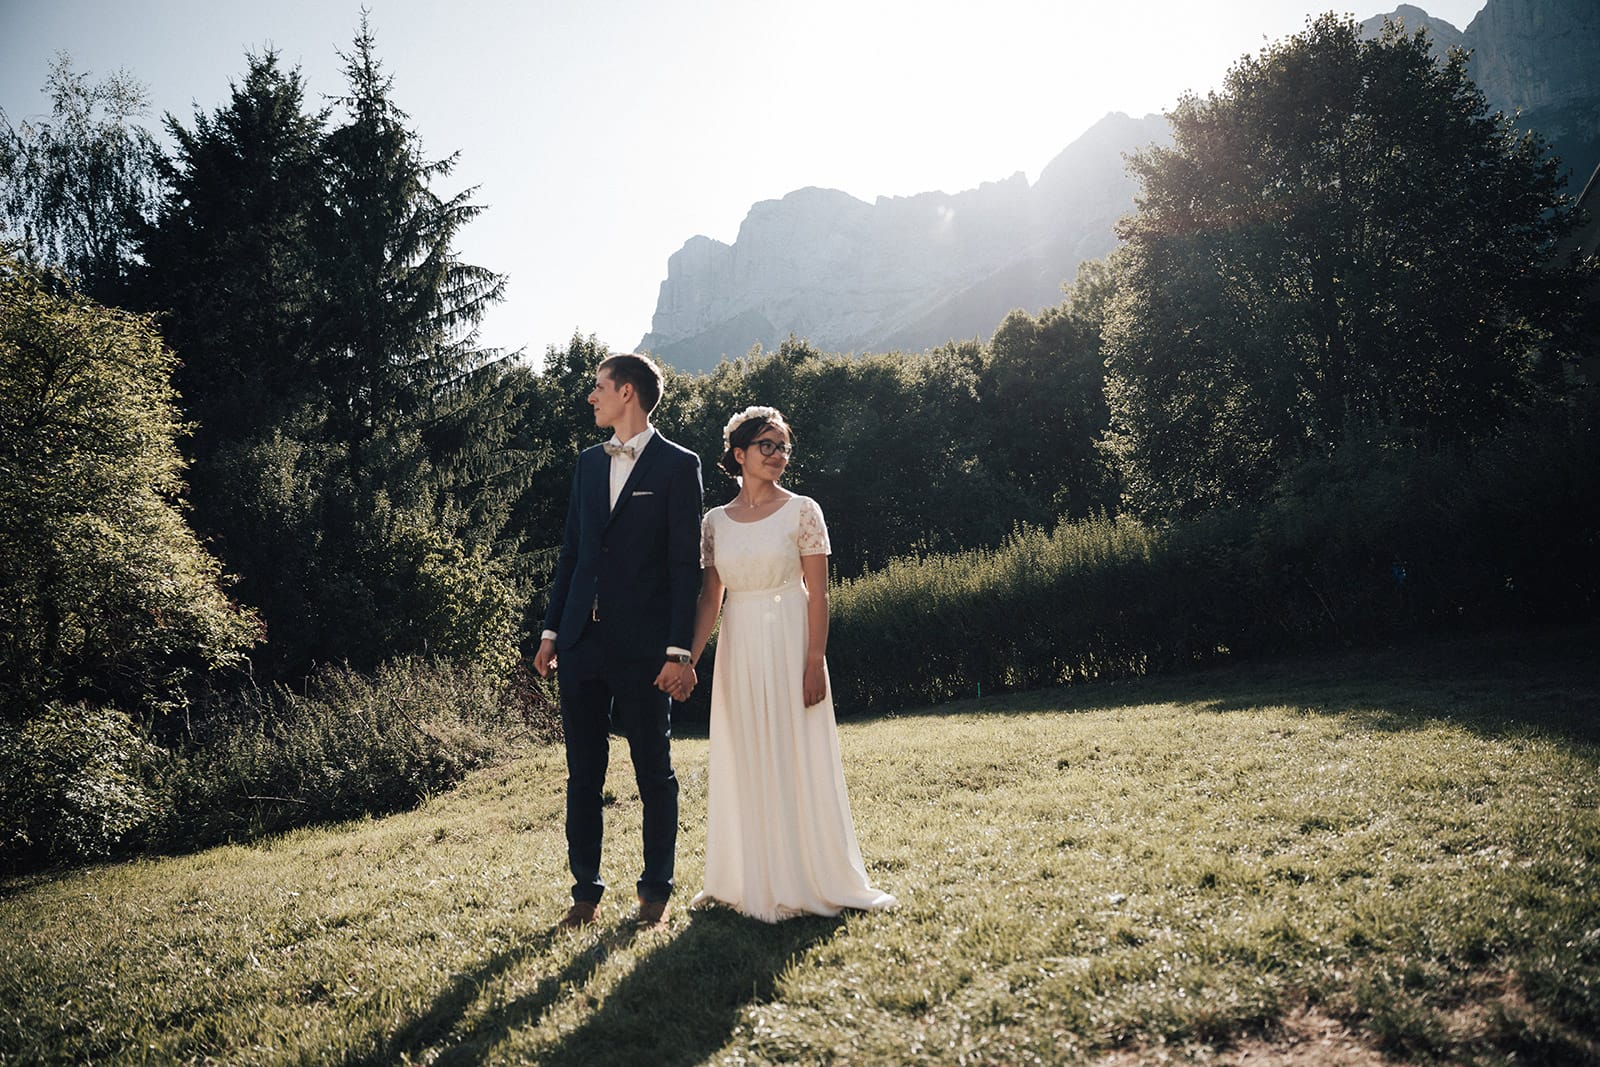 Wedding photographer Isère Alps Mountain Photographe de mariage Isère Alpes Montagne